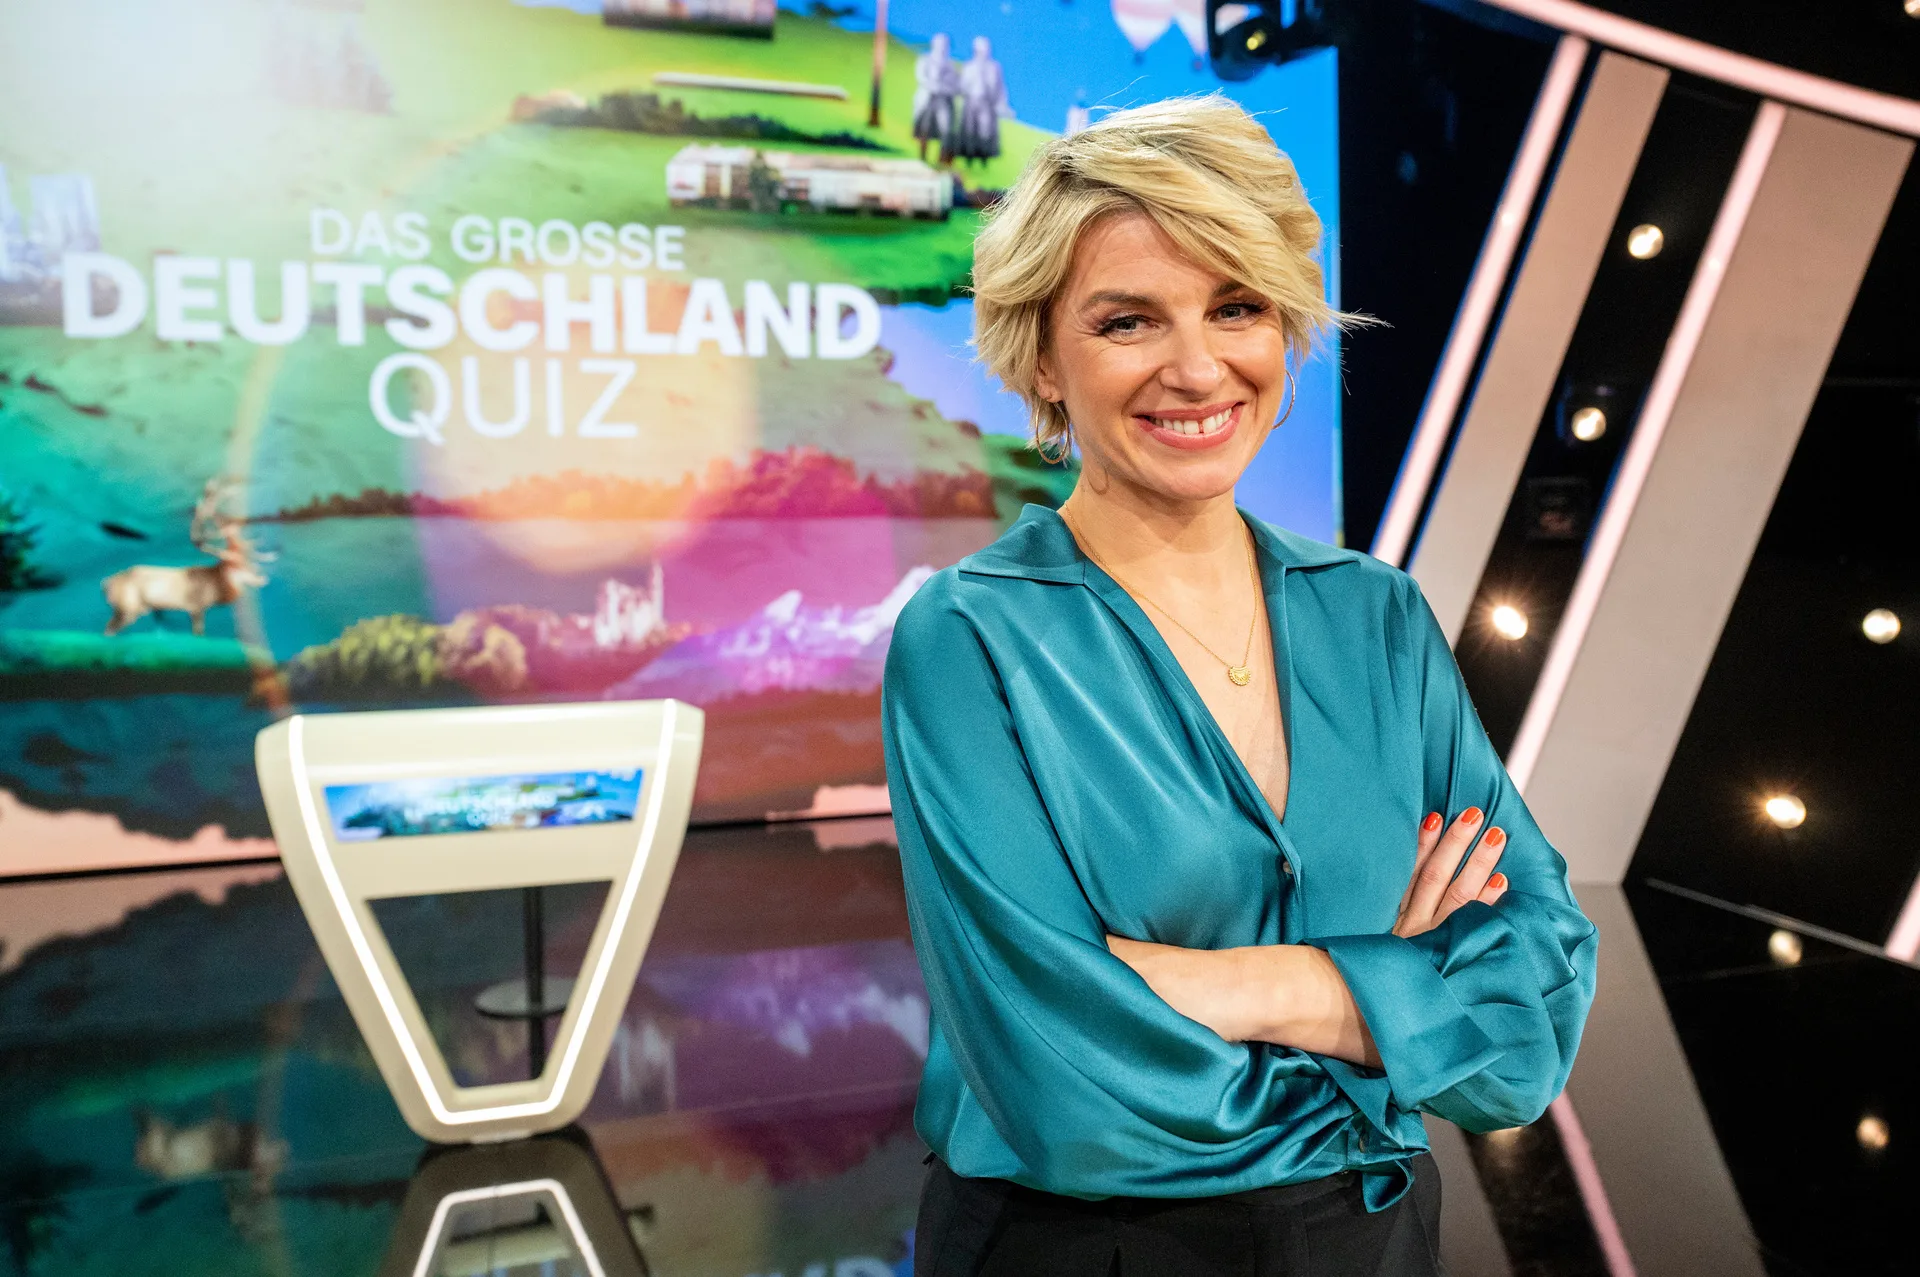 Das große Deutschland-Quiz heute ab 20:15 Uhr im ZDF - alle Gäste & News